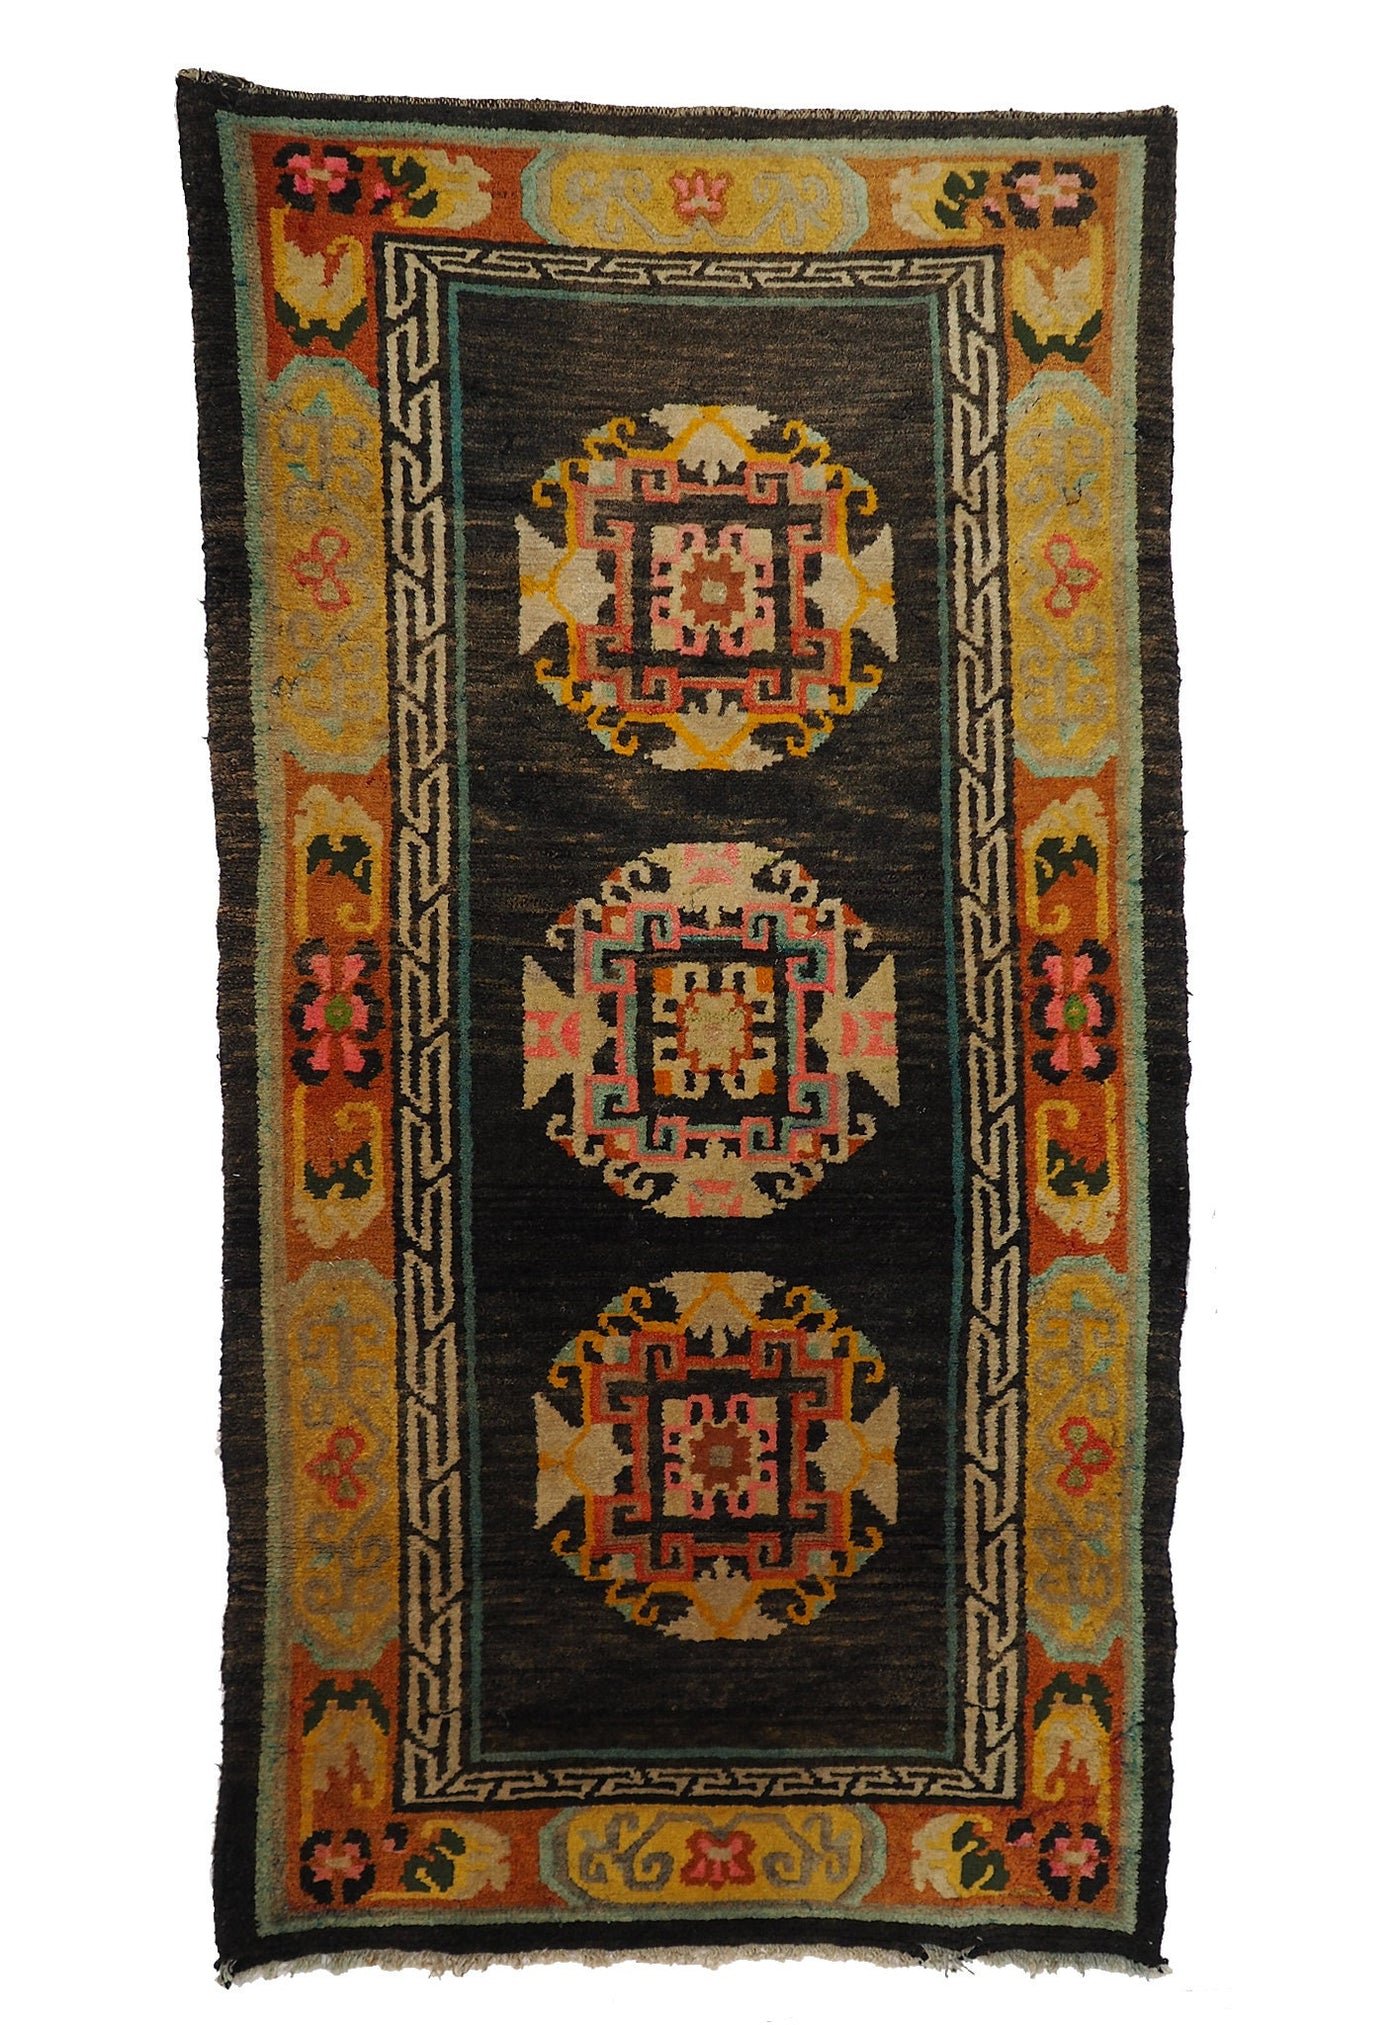 182x95 cm antik Tibetischer Khaden Yoga Meditation Dorfteppich buddhistische Klöster Teppich Schlafteppich Nr.7  Orientsbazar   